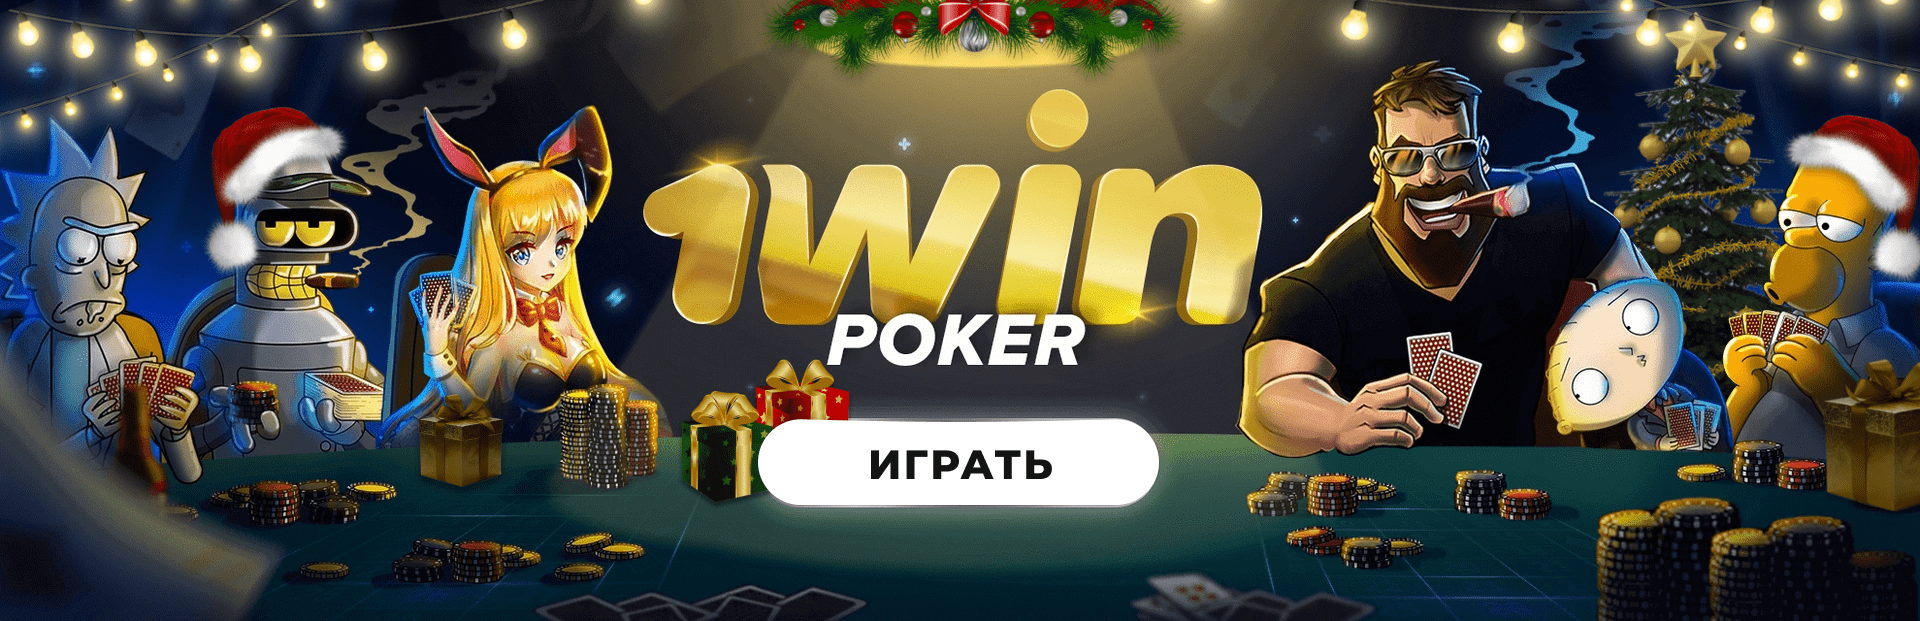 casino 1win poker